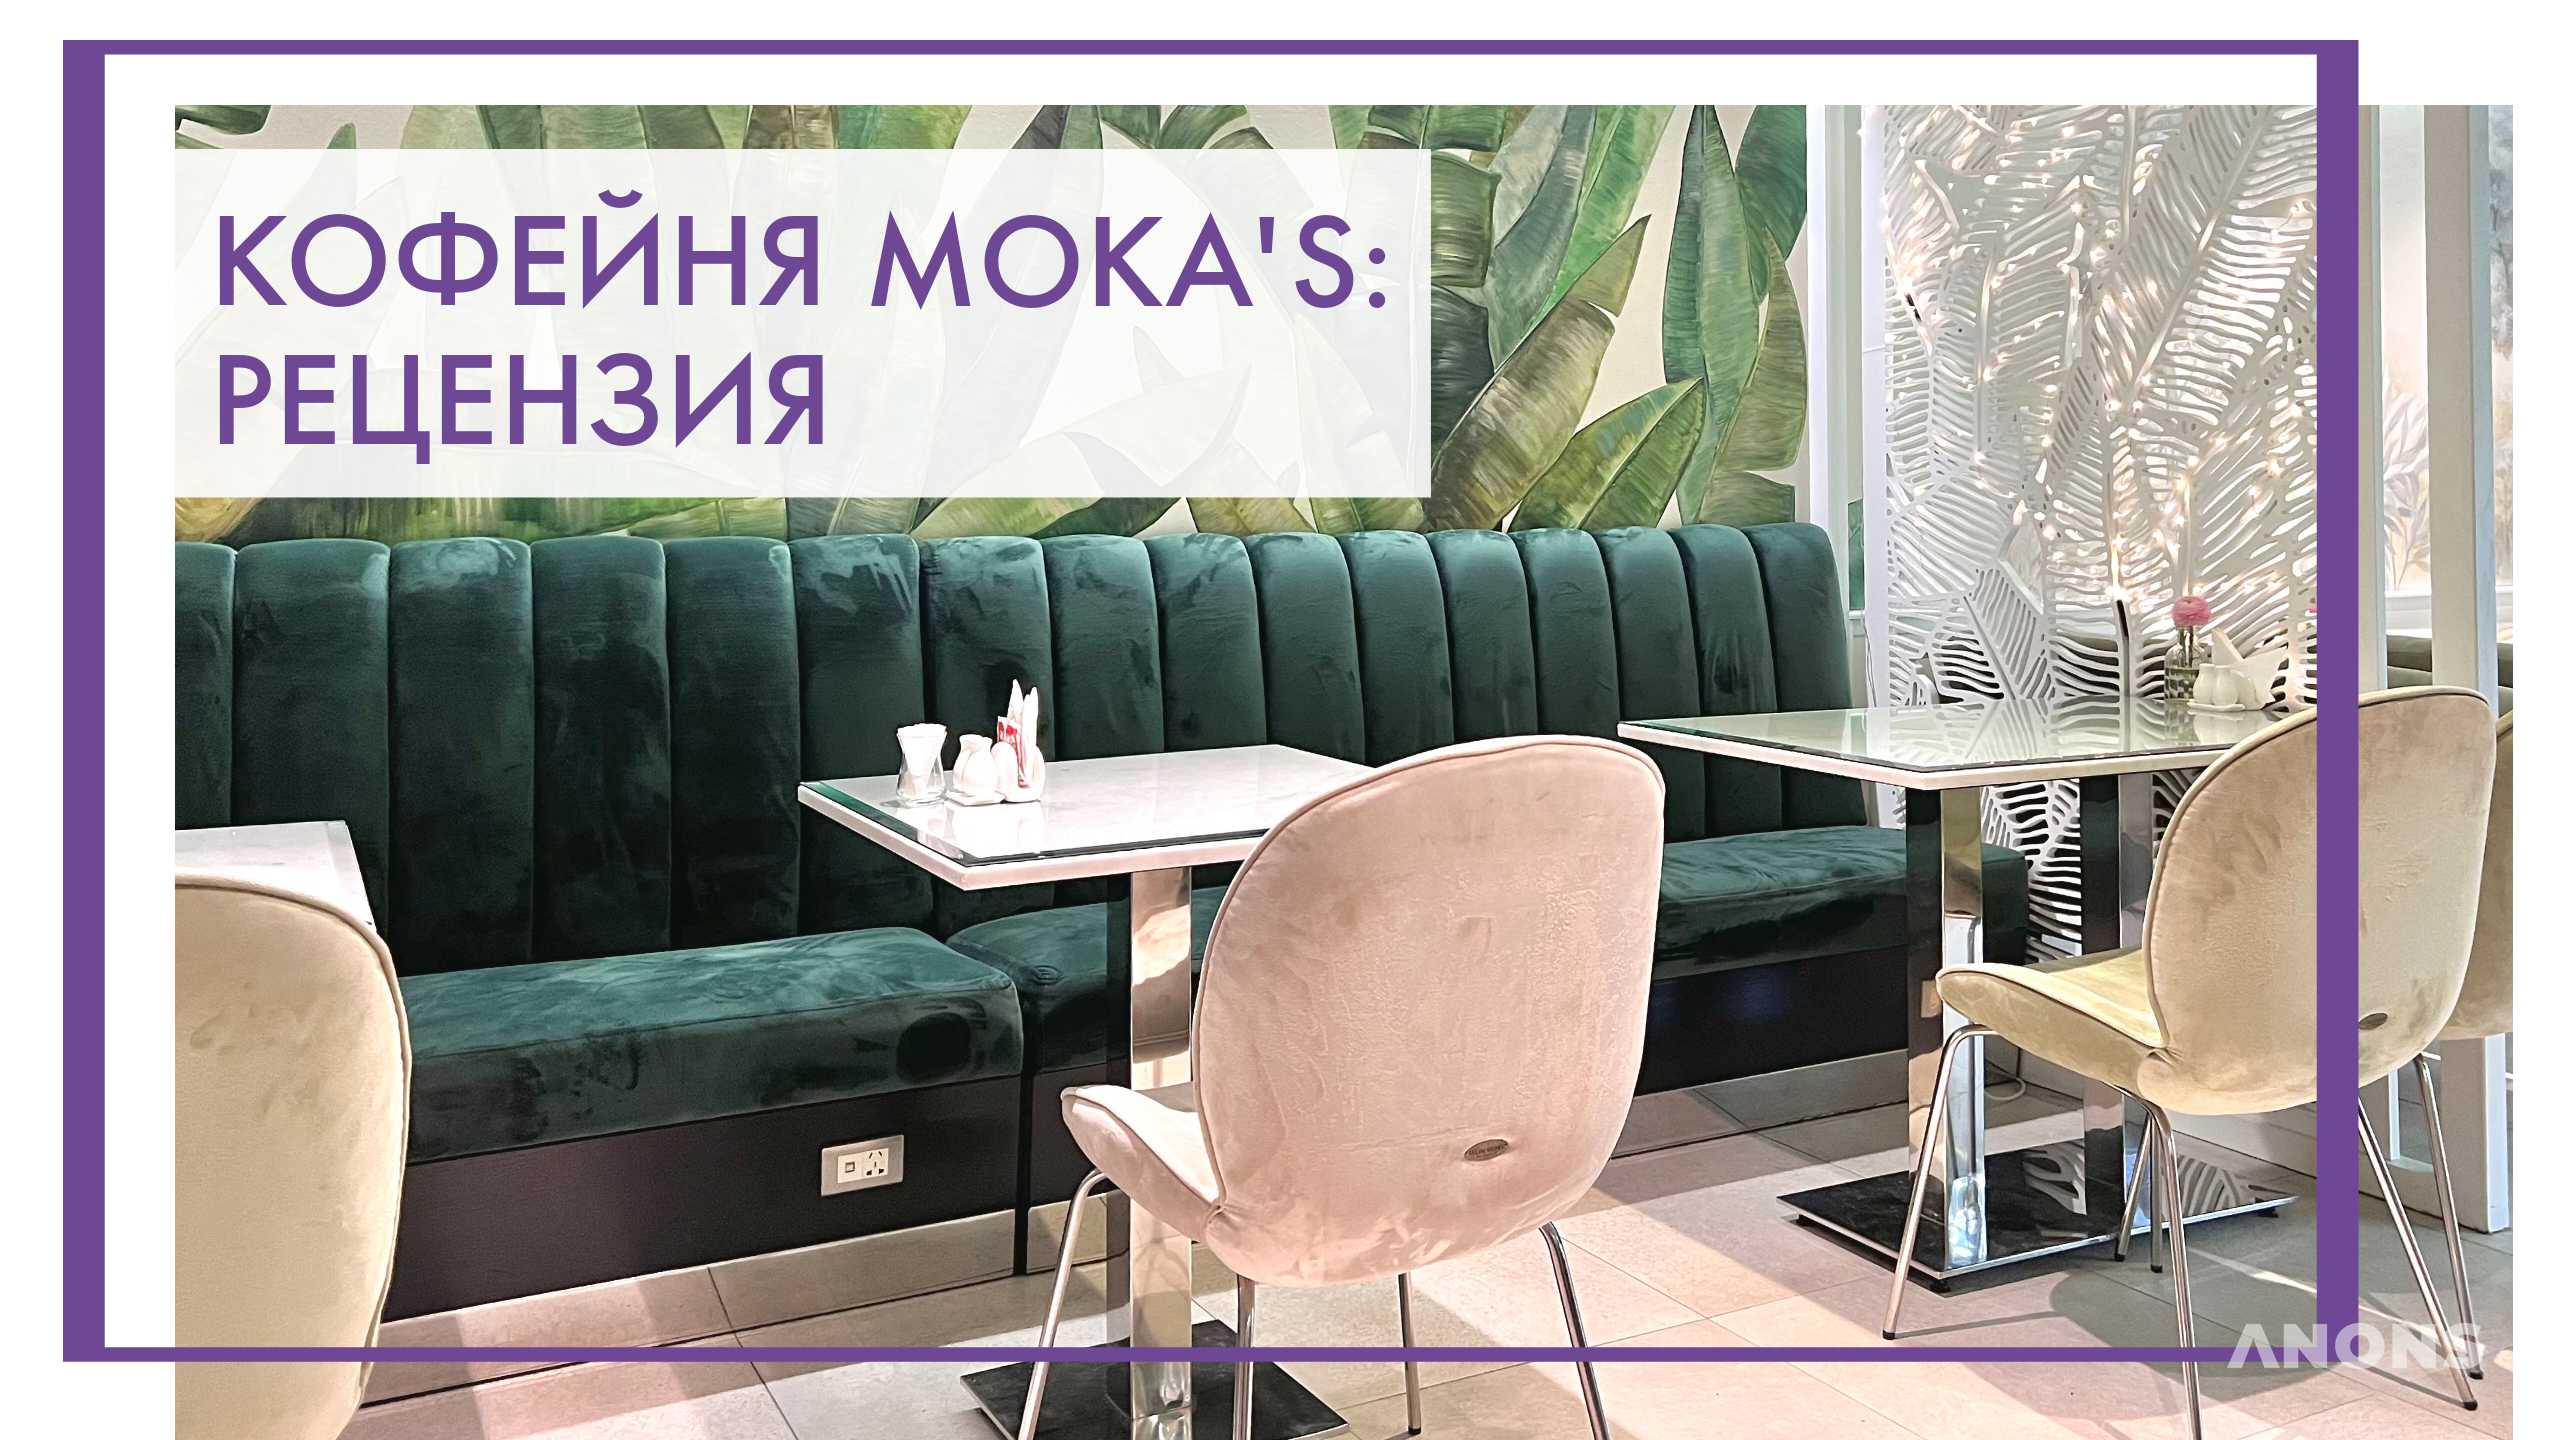 Кофейня Moka’s – рецензия